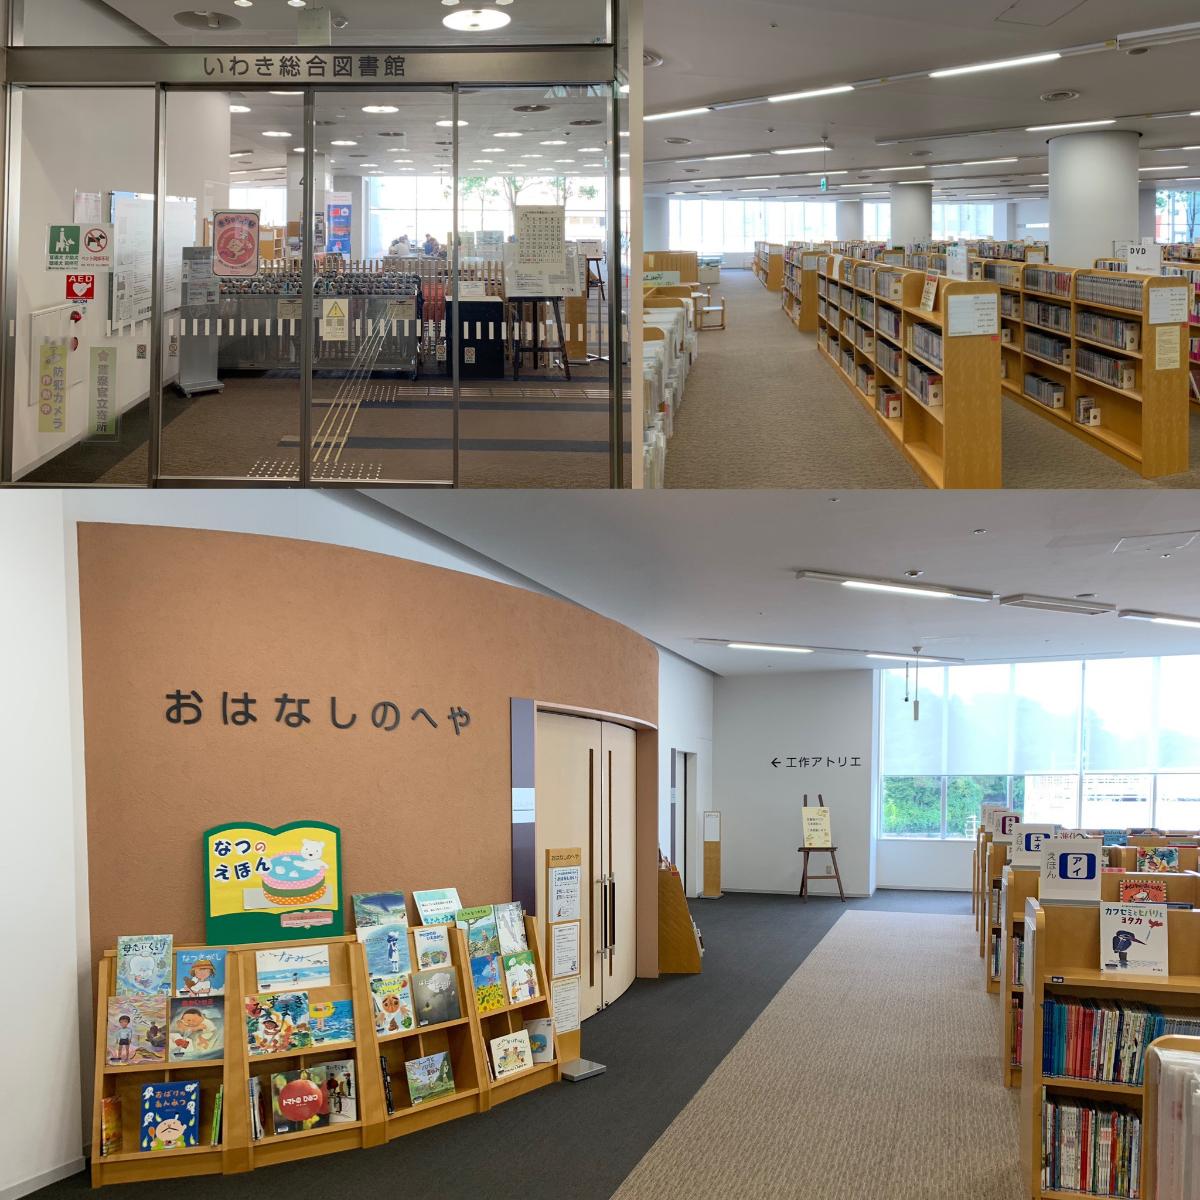 いわき総合図書館（ラトブ内）まで約1.6km（徒歩20分）　いわきで一番本が揃っている場所。それがいわき総合図書館。ラトブ4F、5Fの2フロアにわたり、本好きはもちろん、仕事の調べものもできて何度も足を運びたくなる総合図書館です。中でもおすすめは定期的に開催している赤ちゃんへのお話し会など、読み聞かせ企画があります。これを楽しみにしている子育て世代の奥様たちの情報交換、交流の場にもなっています。